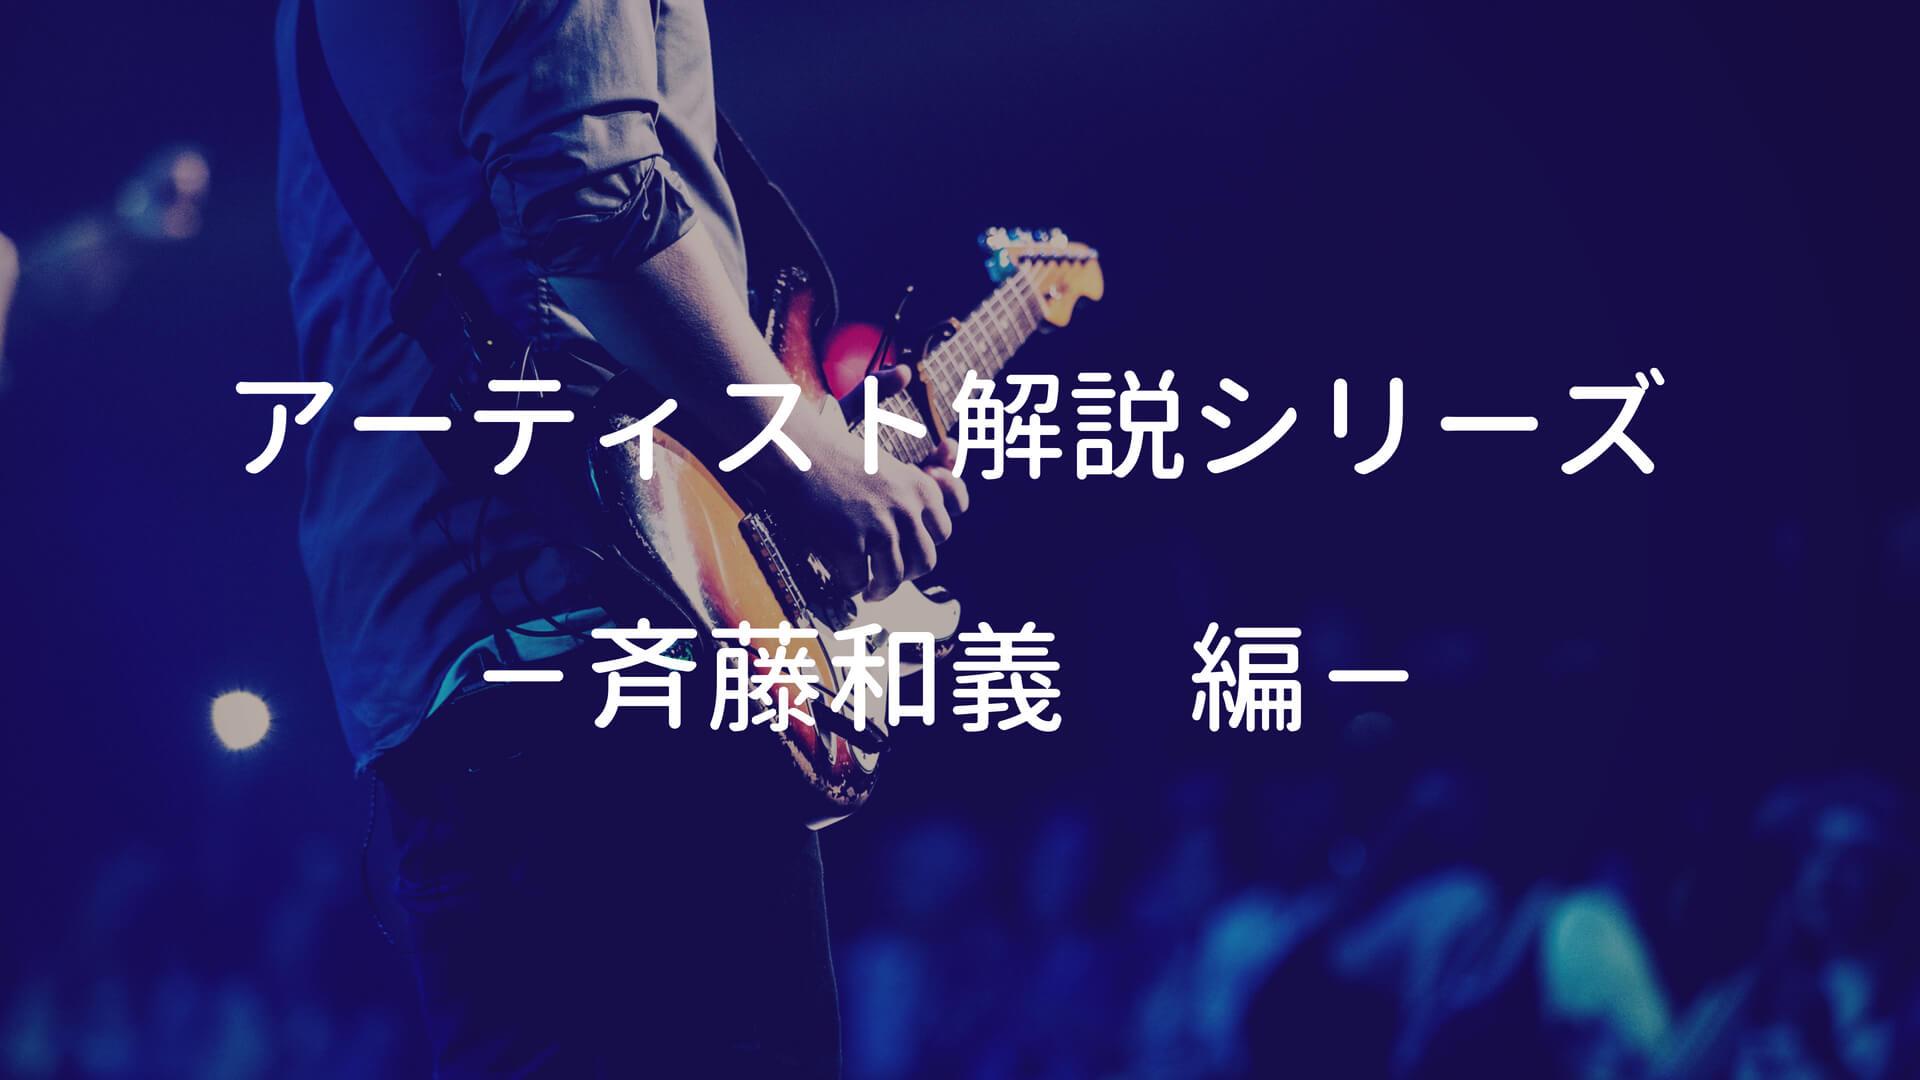 斉藤和義の使用ギター 使用機材と弾き語りの難易度 ポイントを解説 弾き語りすとlabo